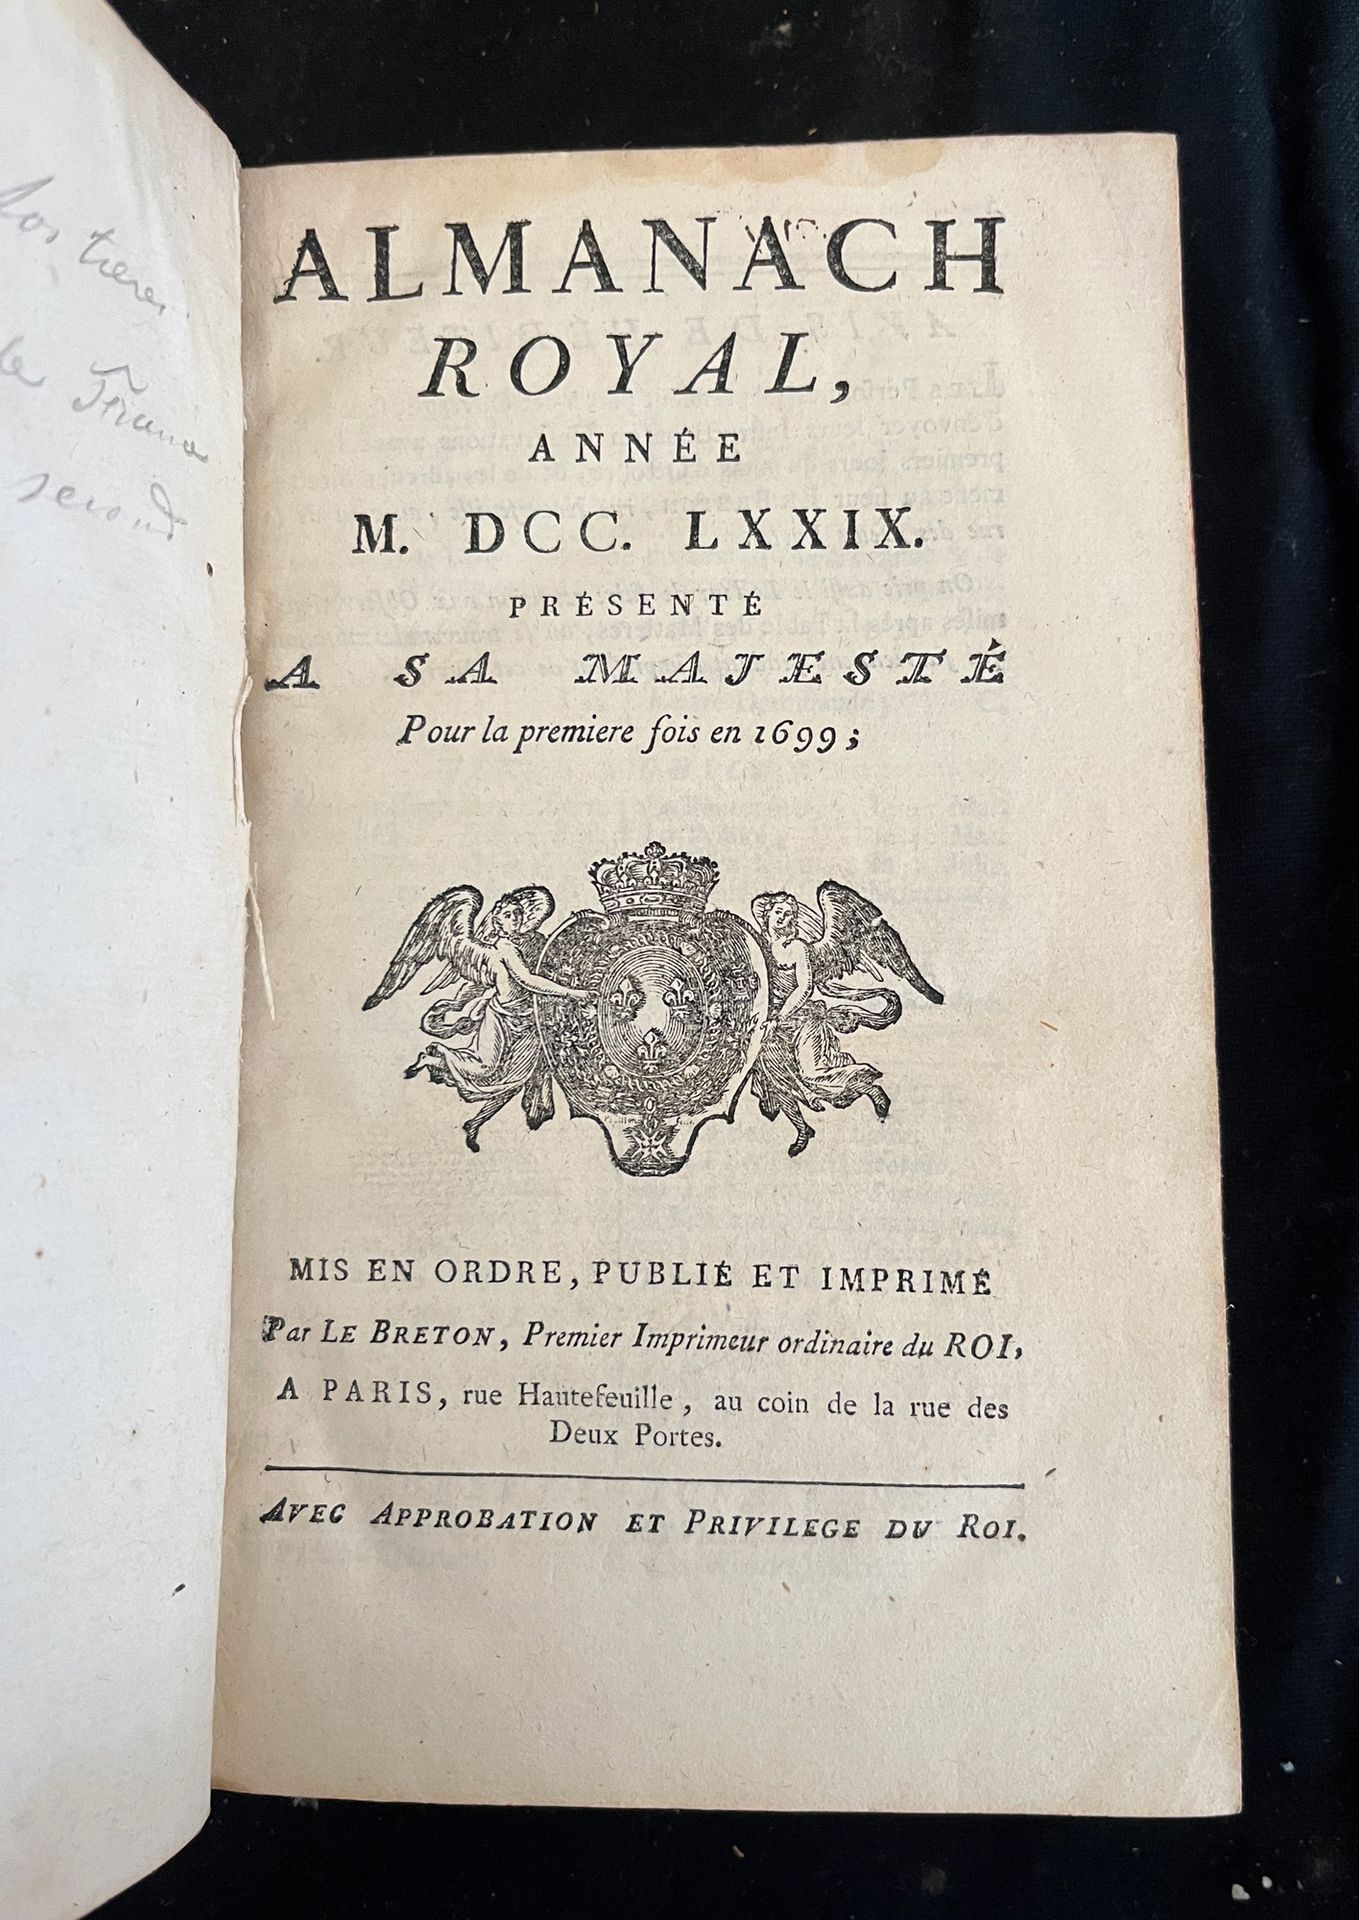 Null [ALMANACH]
Almanach royal pour l'an MDCCLXXIX. Paris, chez Le Breton rue Ha&hellip;